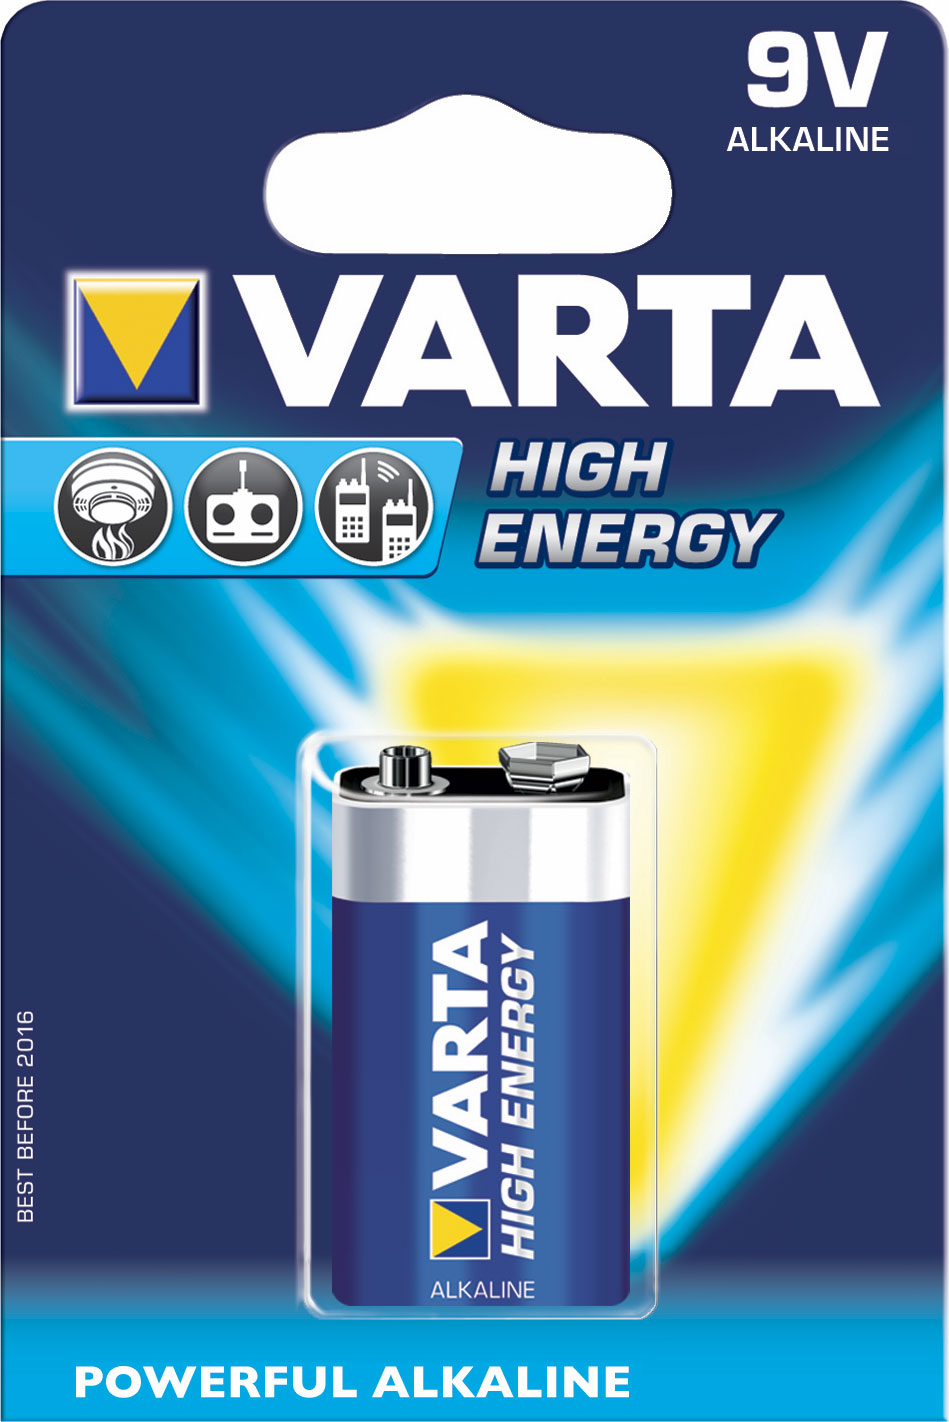 Varta HighEnergy 6LR61, alkalická batéria (9V) 1 ks, blister